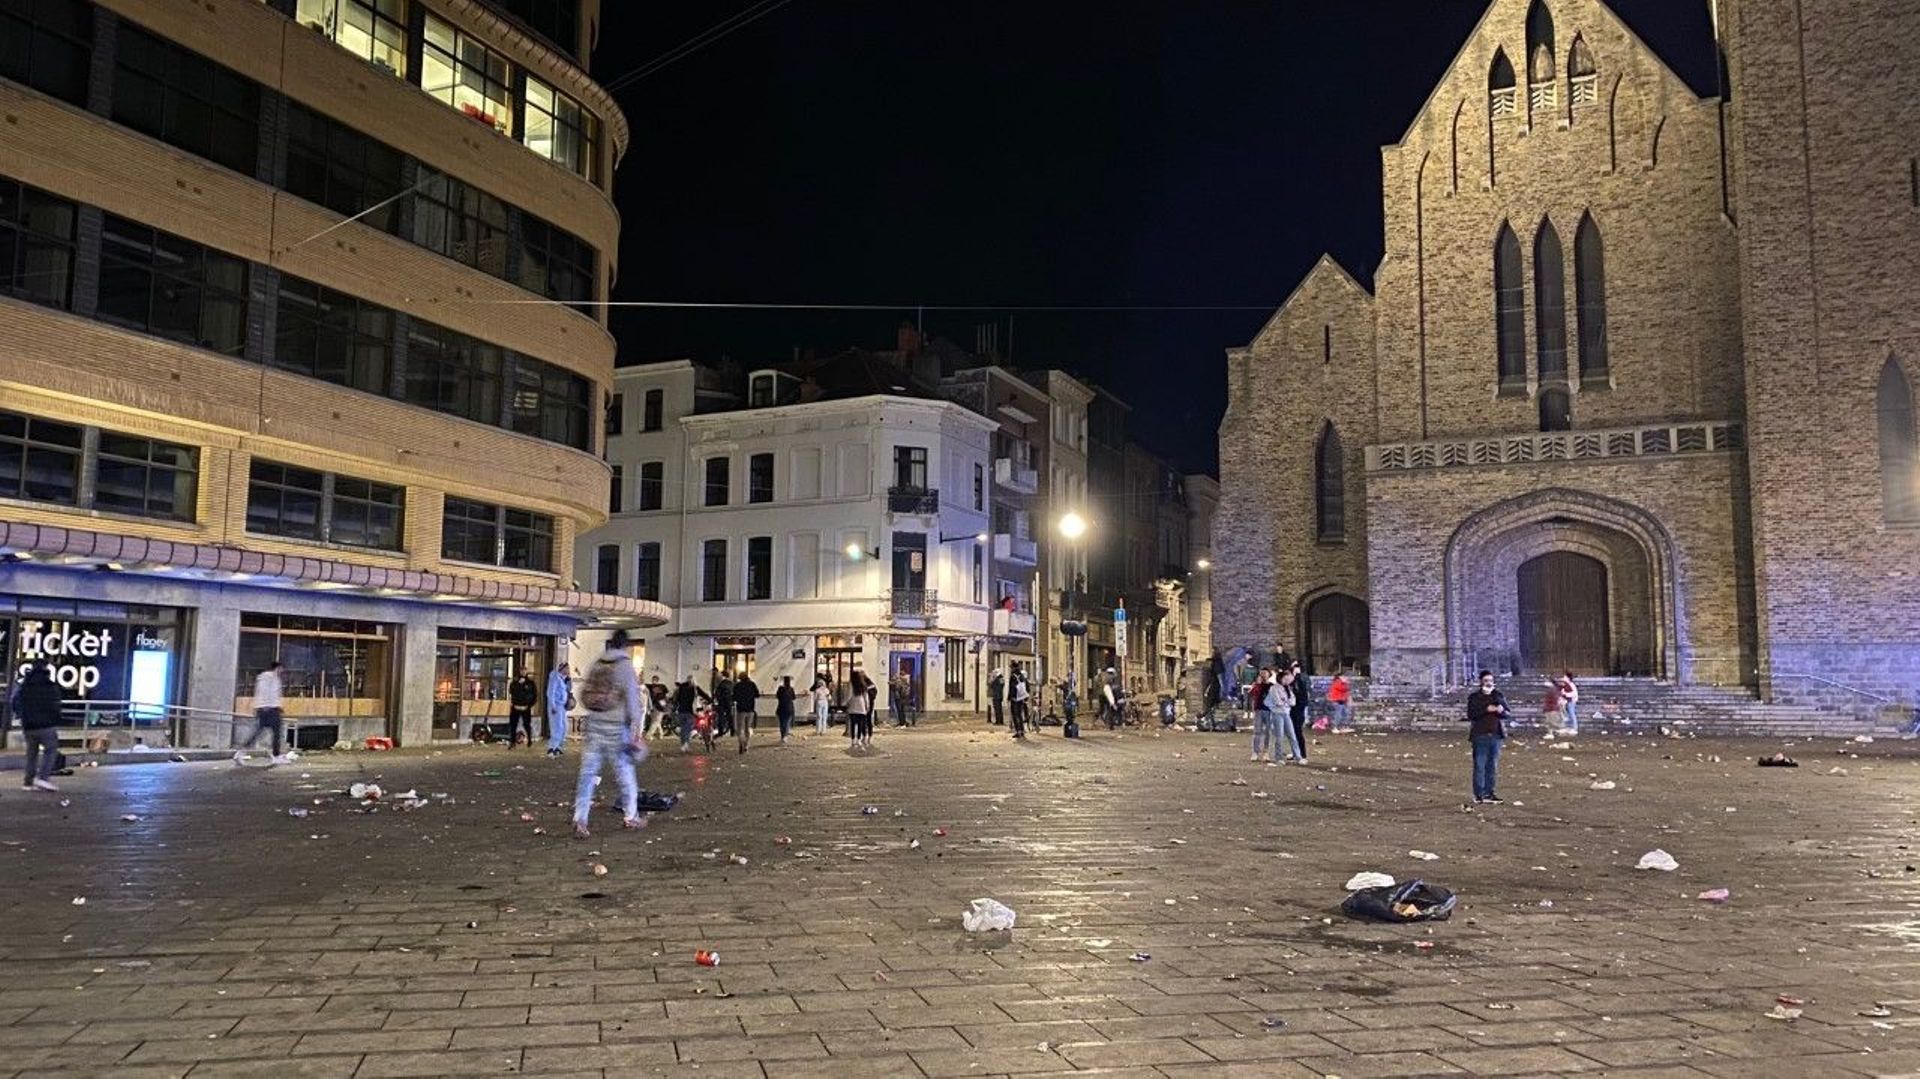 Déconfinement à Ixelles : la place Flagey noire de monde a finalement retrouvé son calme vers 1h30 après intervention policière